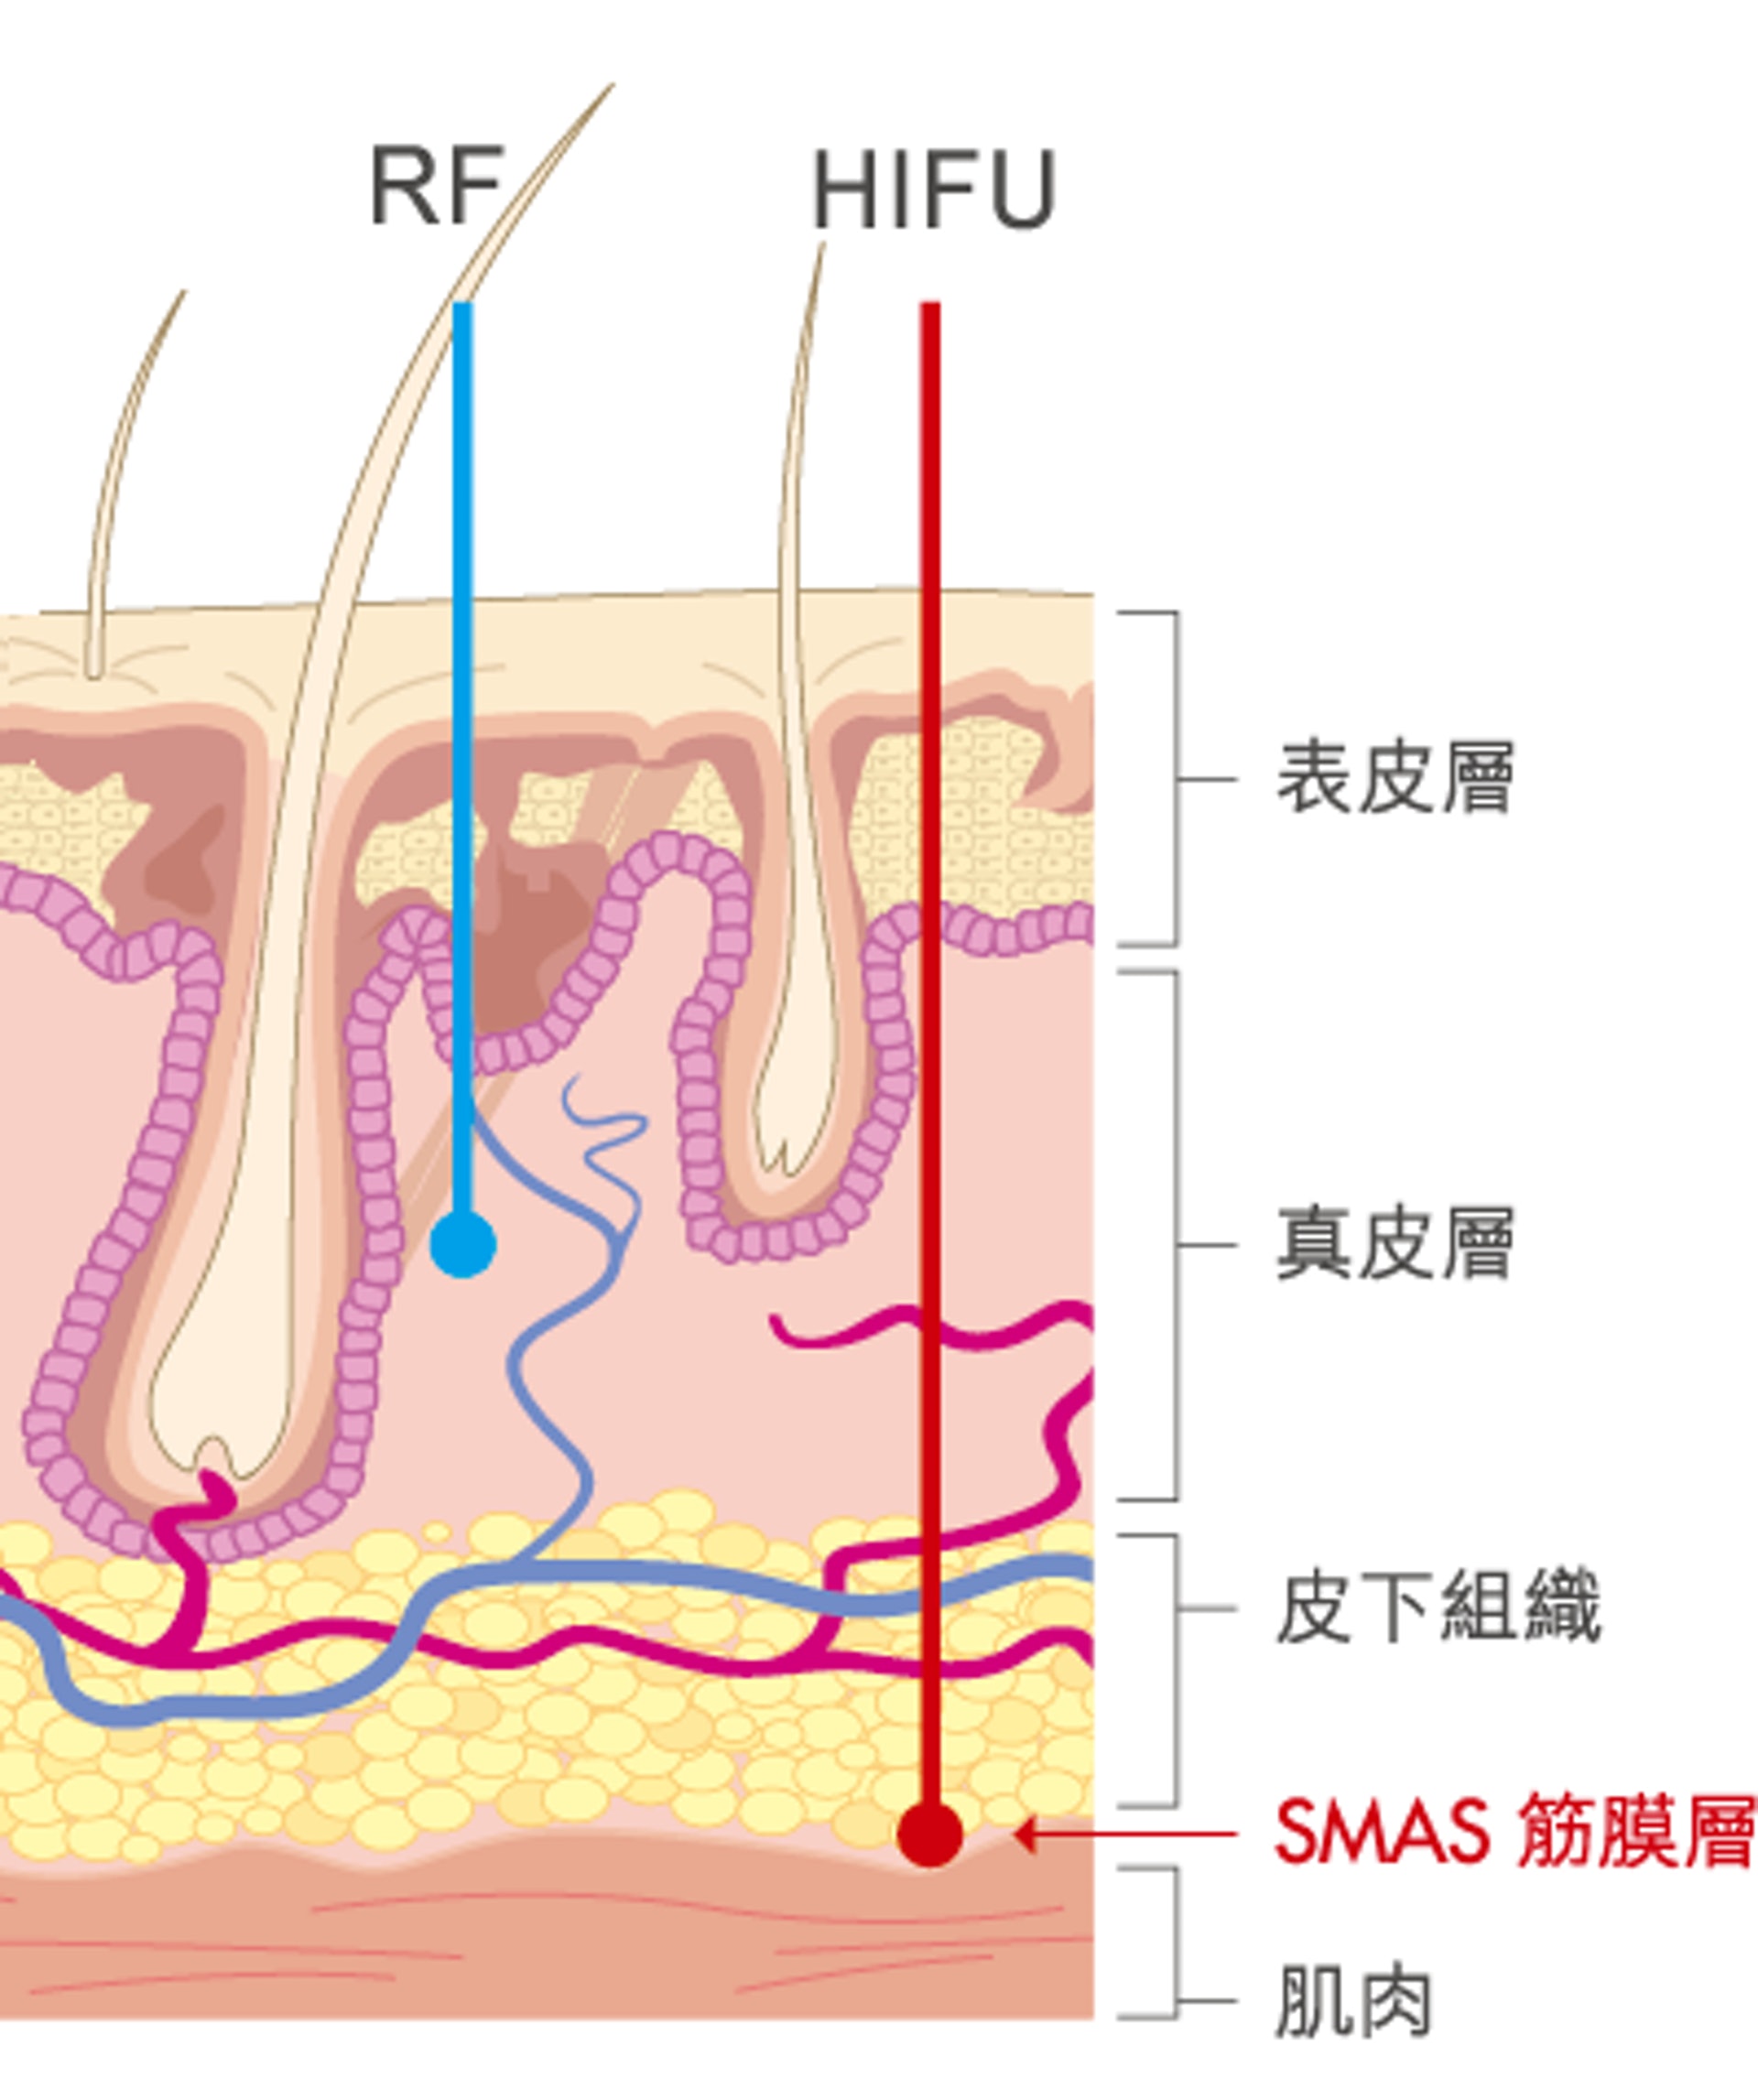 HIFU 能夠深入至 SMAS 筋膜層，即傳統拉皮手術針對處理的皮層，使 HIFU 具備 RF 所缺乏的 「提升」效果。(圖片：網絡圖片）